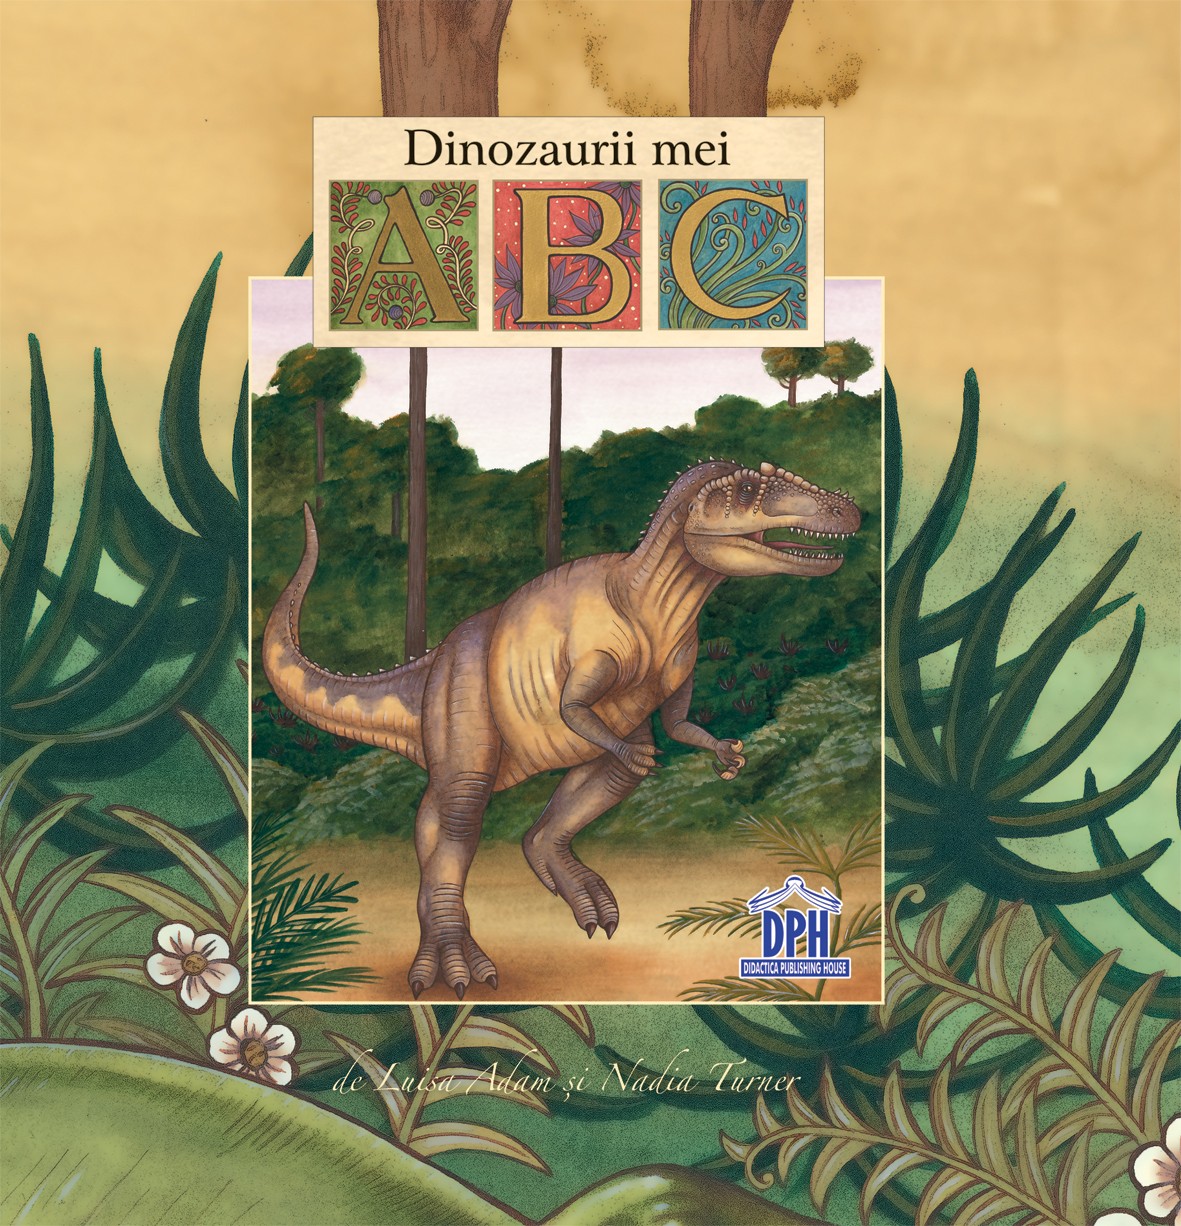 Vezi detalii pentru Dinozaurii mei - ABC